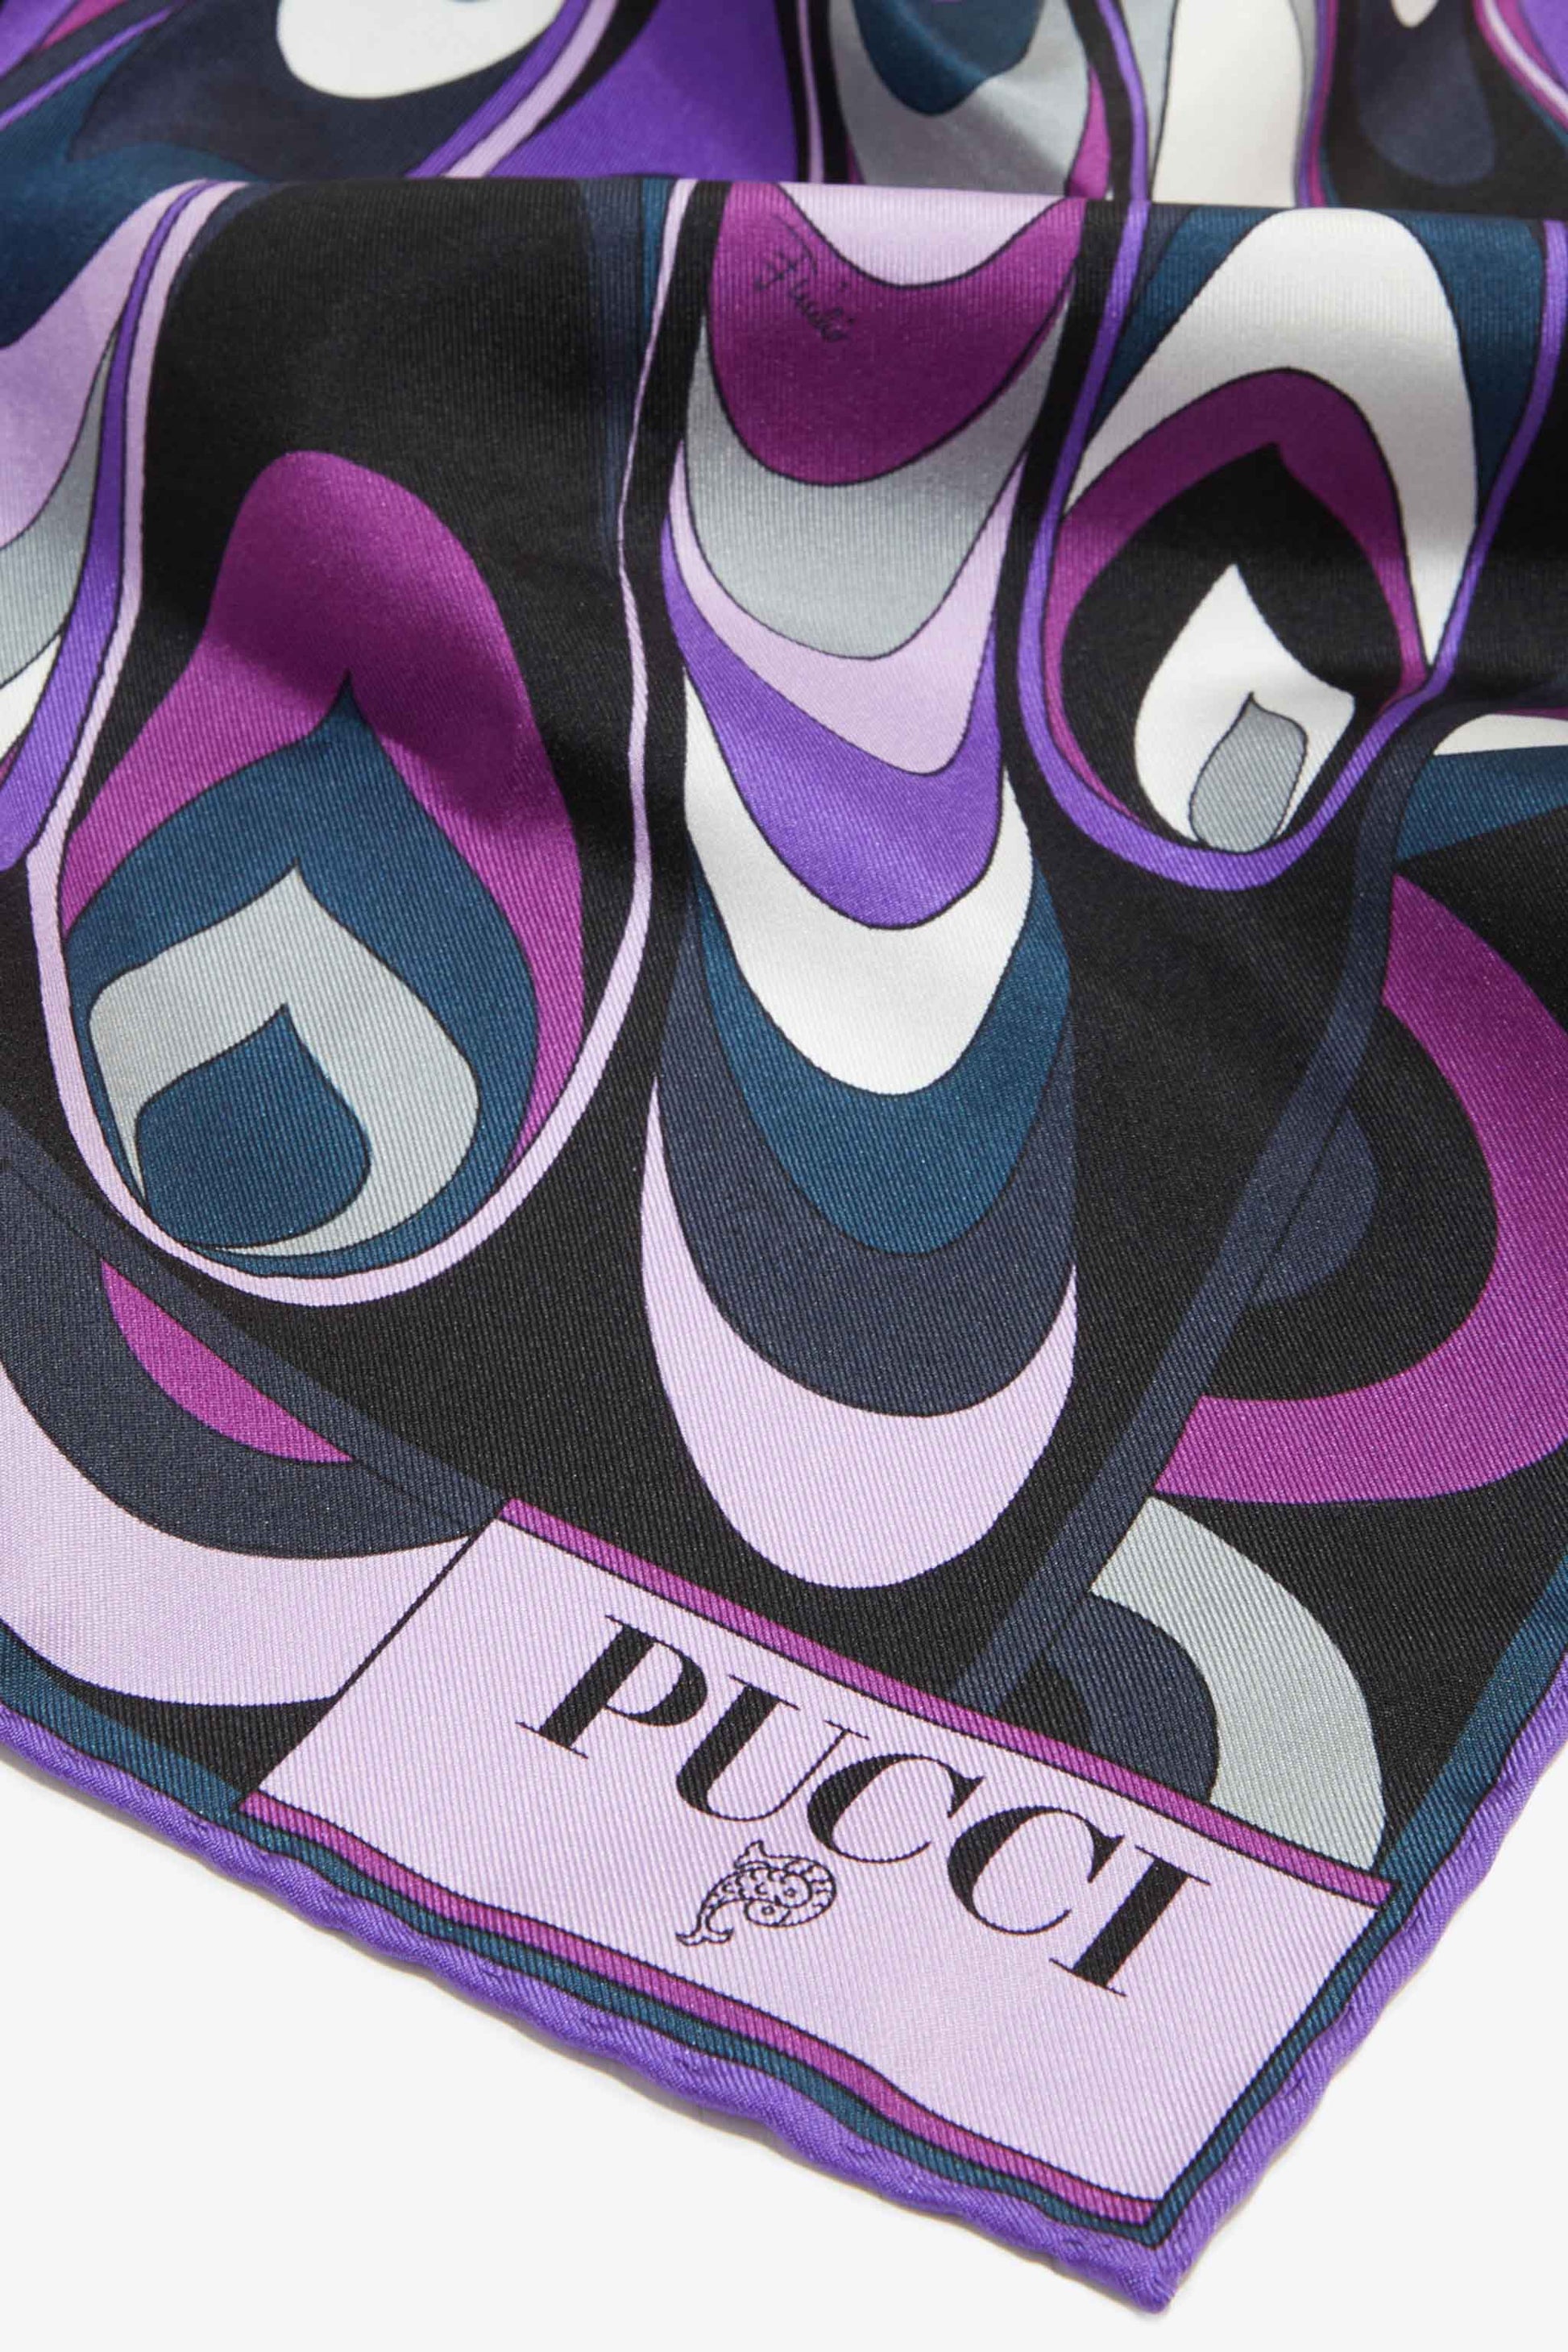 Emilio Pucci - Onde-Print Silk-Twill Carré - ICON-ICON